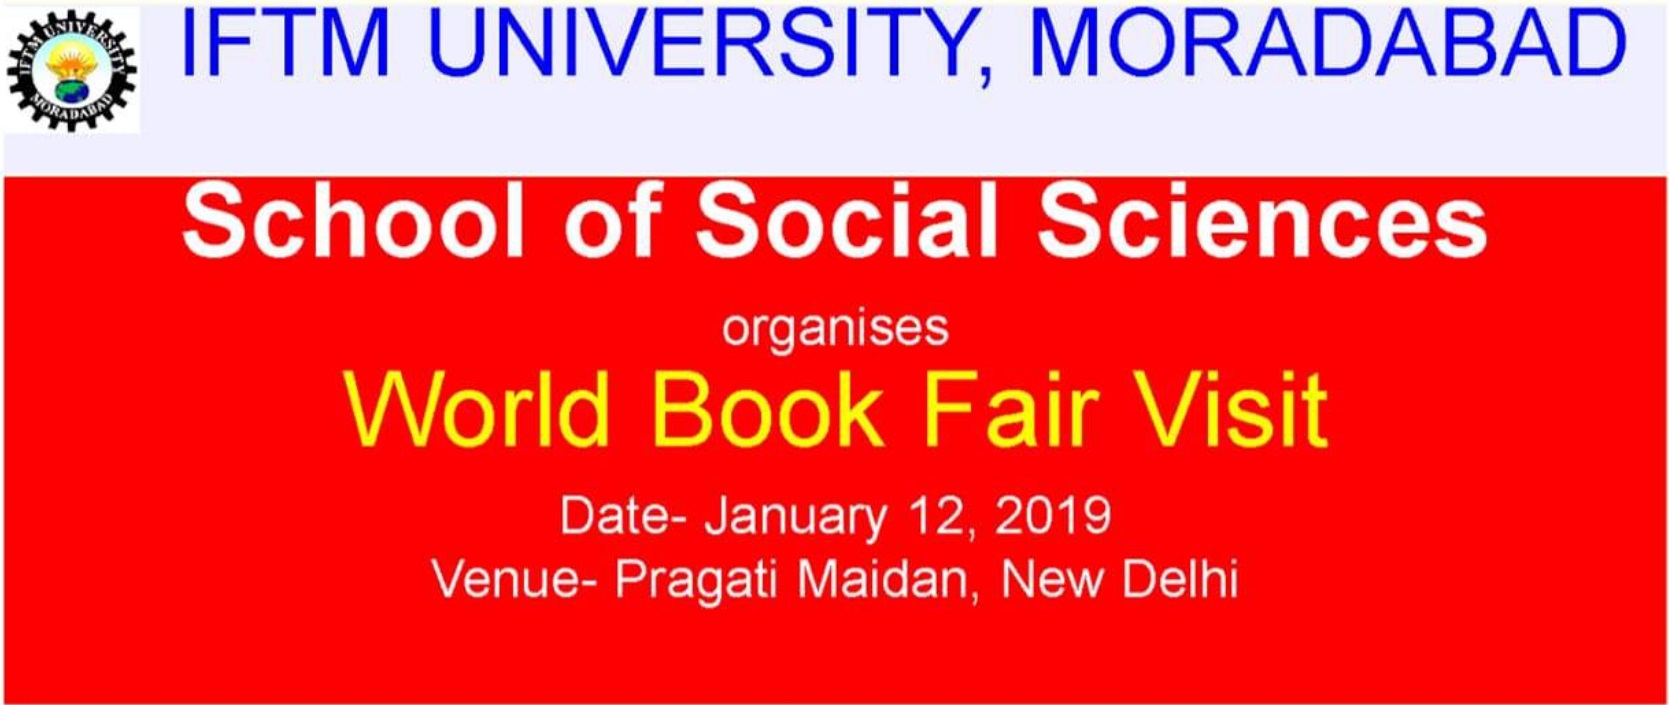 World Book Fair Visit